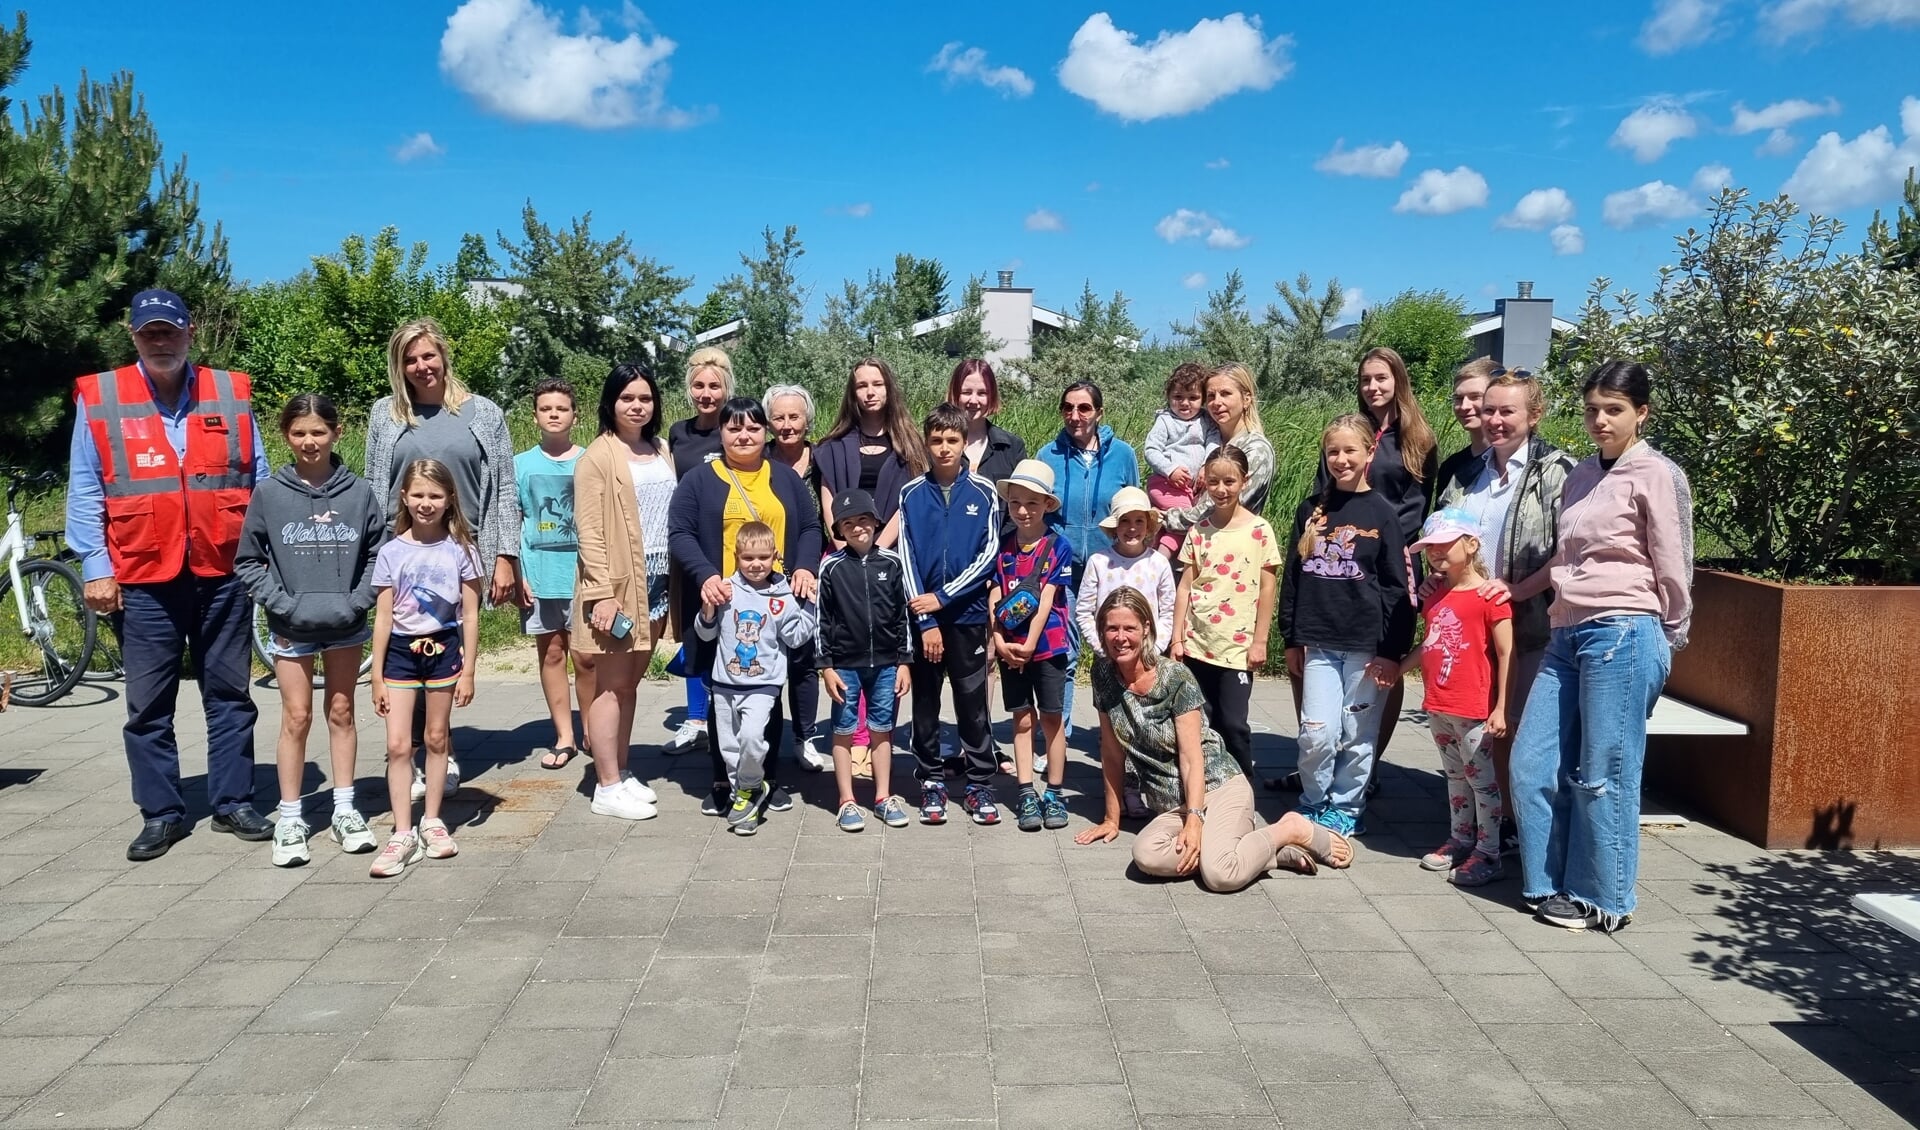 Speciaal voor de gelegenheid bracht het toeristentreintje de Oekraïense kinderen met hun moeders van het Hart van Hellevoet naar het park.